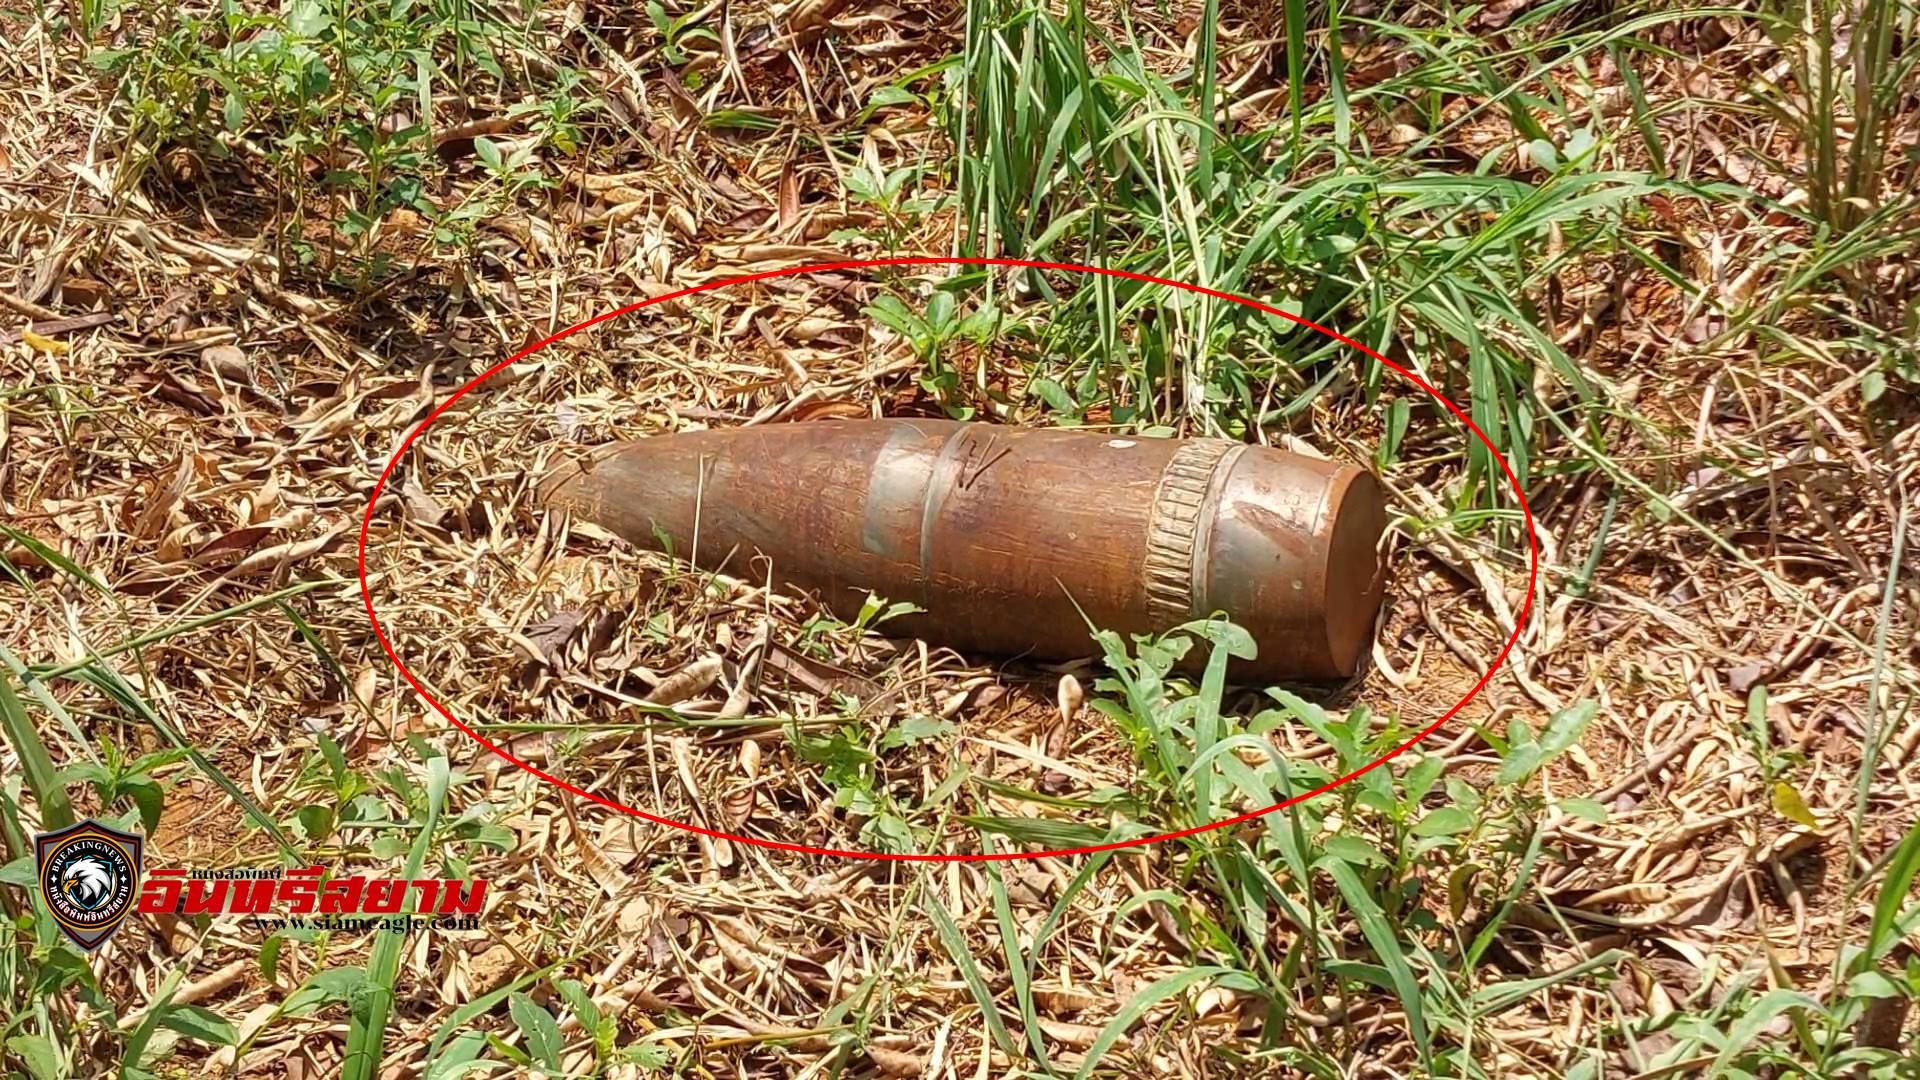 ประจวบคีรีชขันธ์-ชาวสวนมะม่วงผวา..!!พบกระสุนปืนใหญ่ลอยมาตกในสวน..โชคดีไม่ระเบิด..